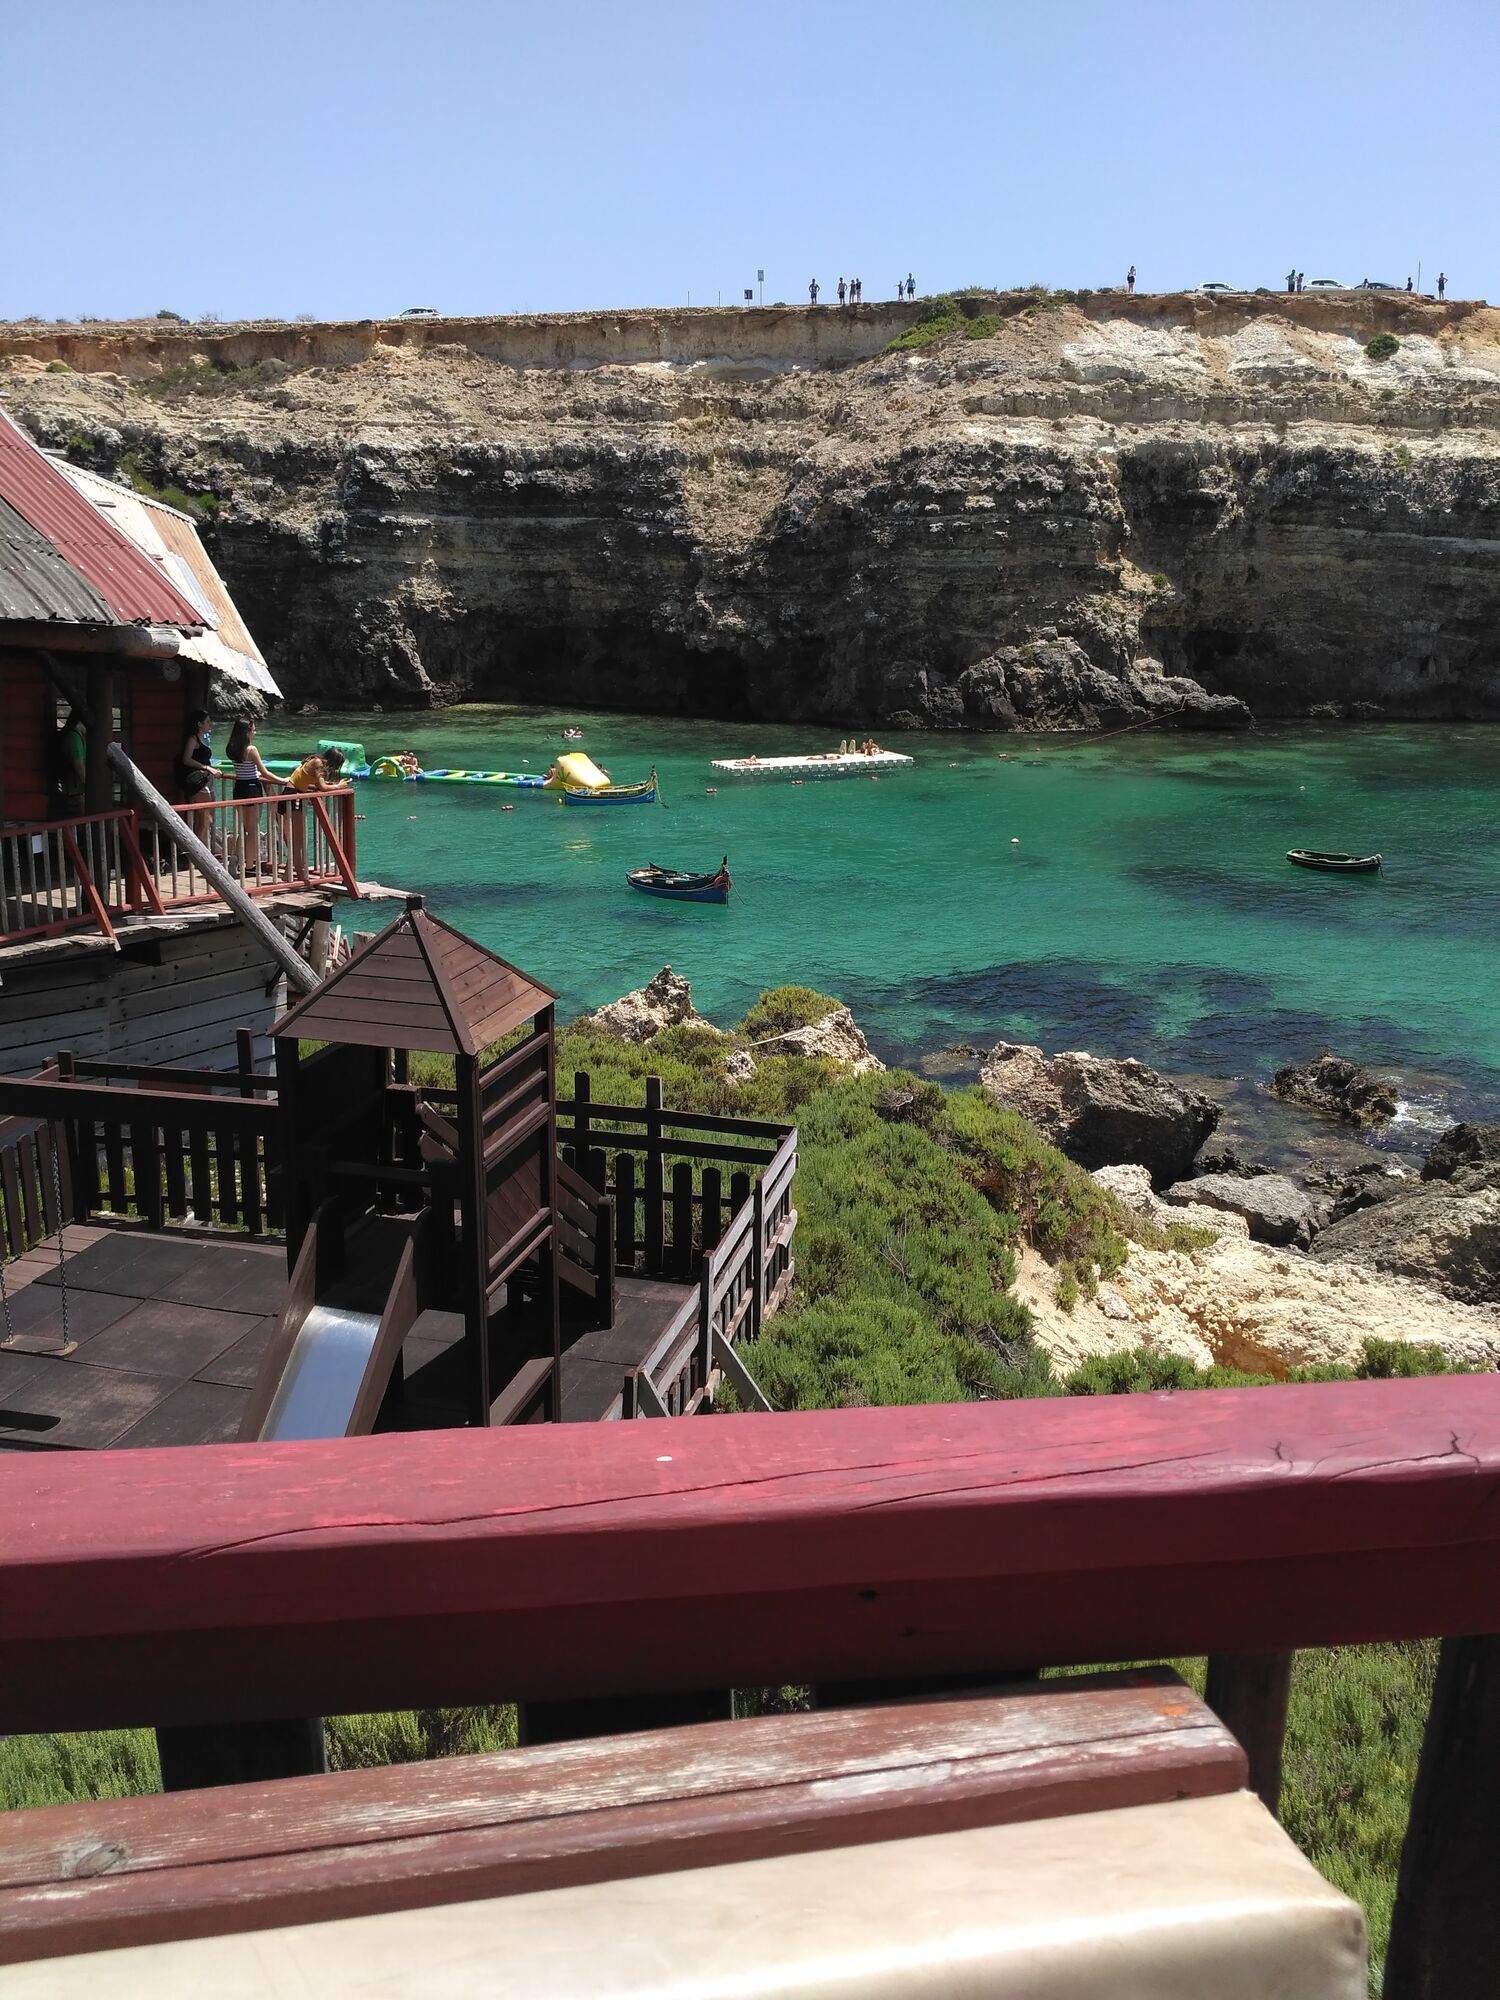 "Мальта - страна не дешевая": путешественница из Украины рассказала об отдыхе на сказочном острове